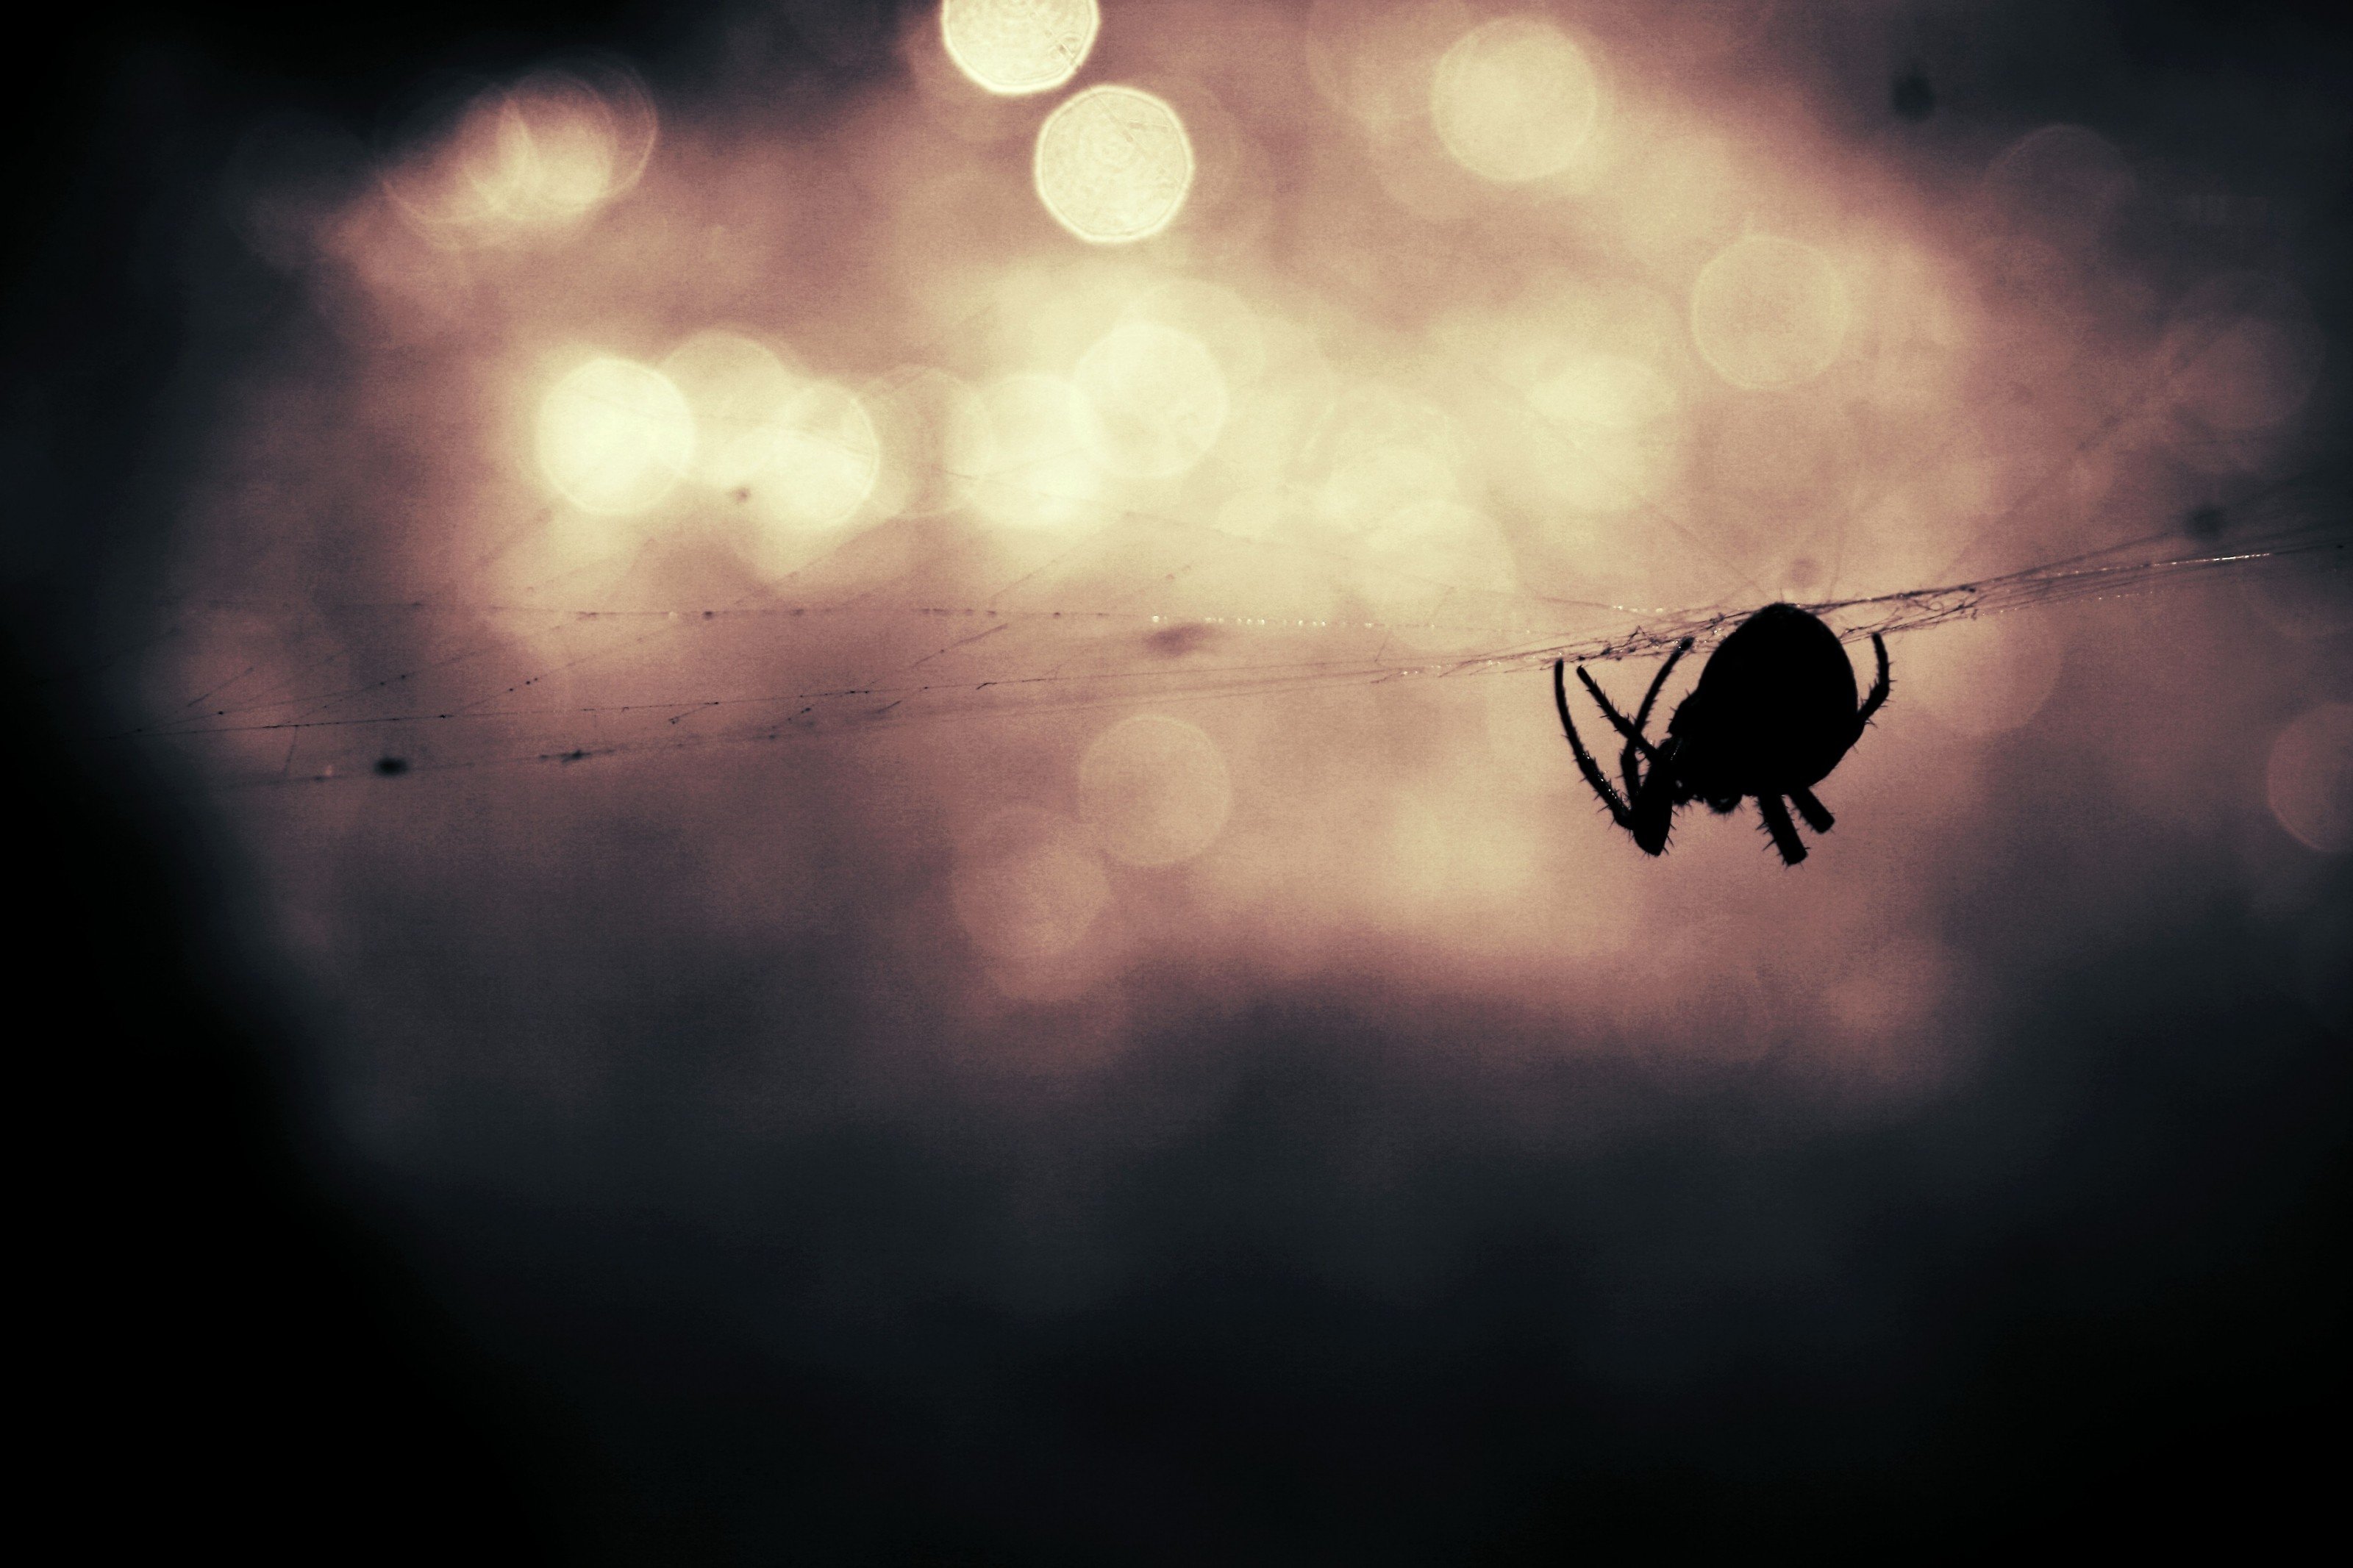 Quelque 15 à 50 % des personnes seraient concernées par l’arachnophobie. © CC0 1.0, domaine public